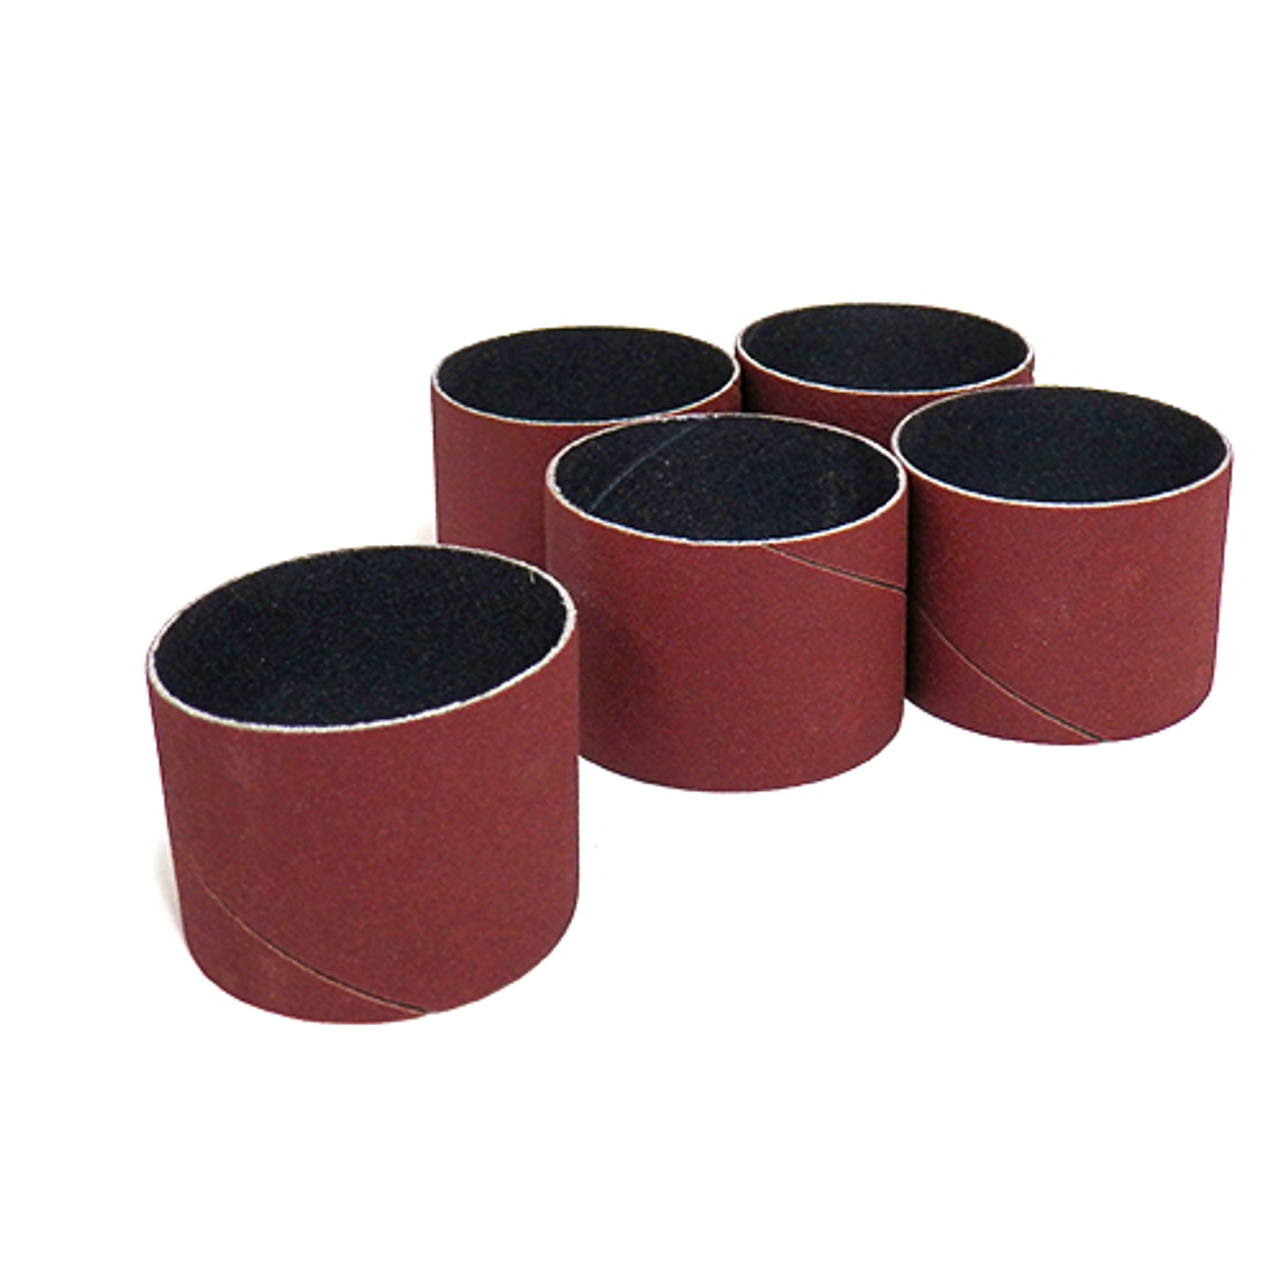 Klingspor Abrasives Aluminum Oxide Sanding Sleeves, 2"x 1-1/2" 100 Grit, 5pk